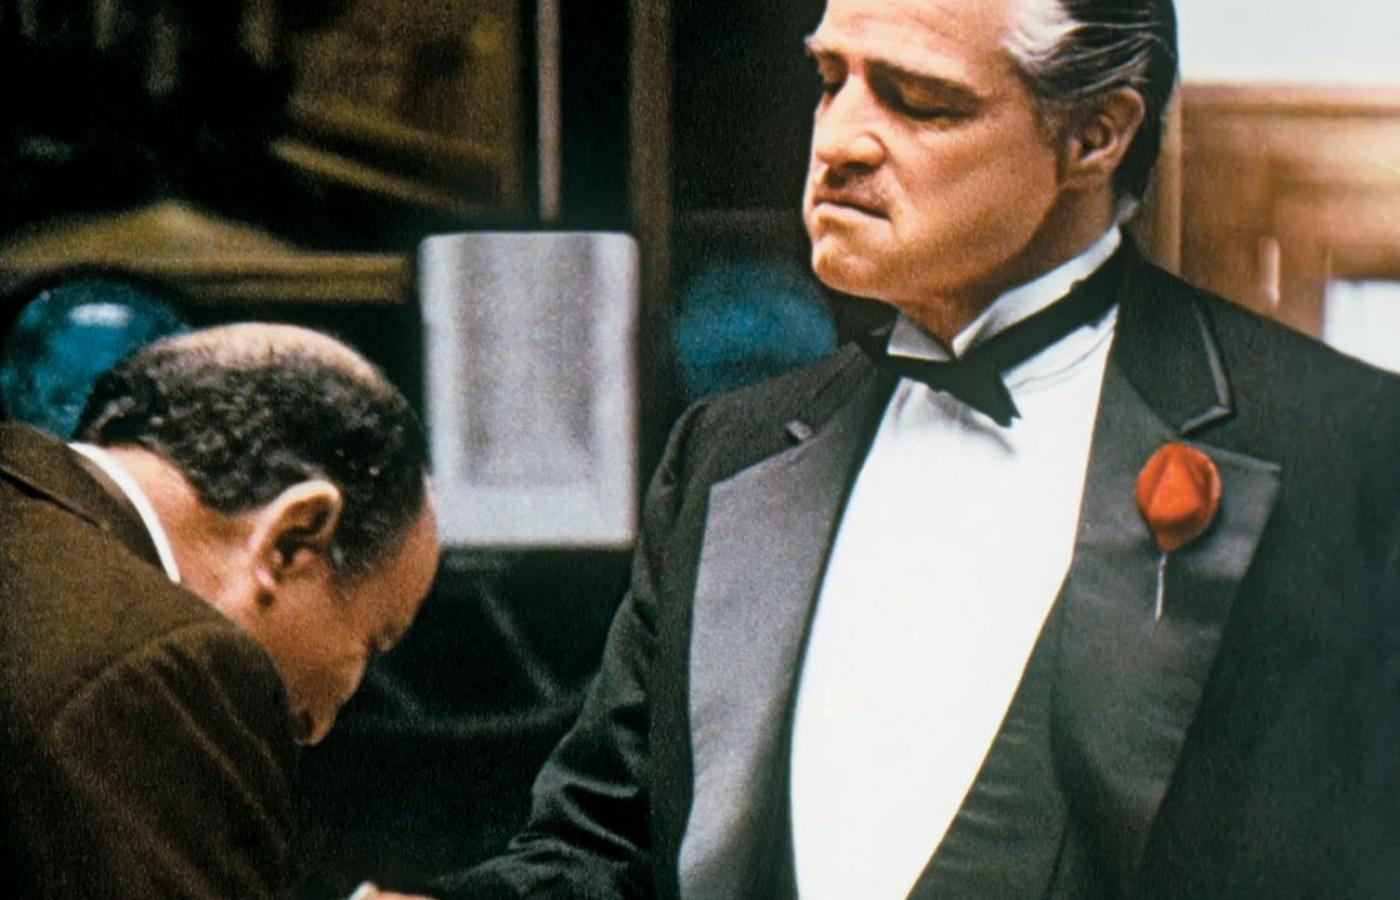 Przykładem struktury działającej dzięki silnemu kapitałowi społecznemu jest także mafia. Na fot.: kadr z filmu „Ojciec chrzestny” (1972 r.).